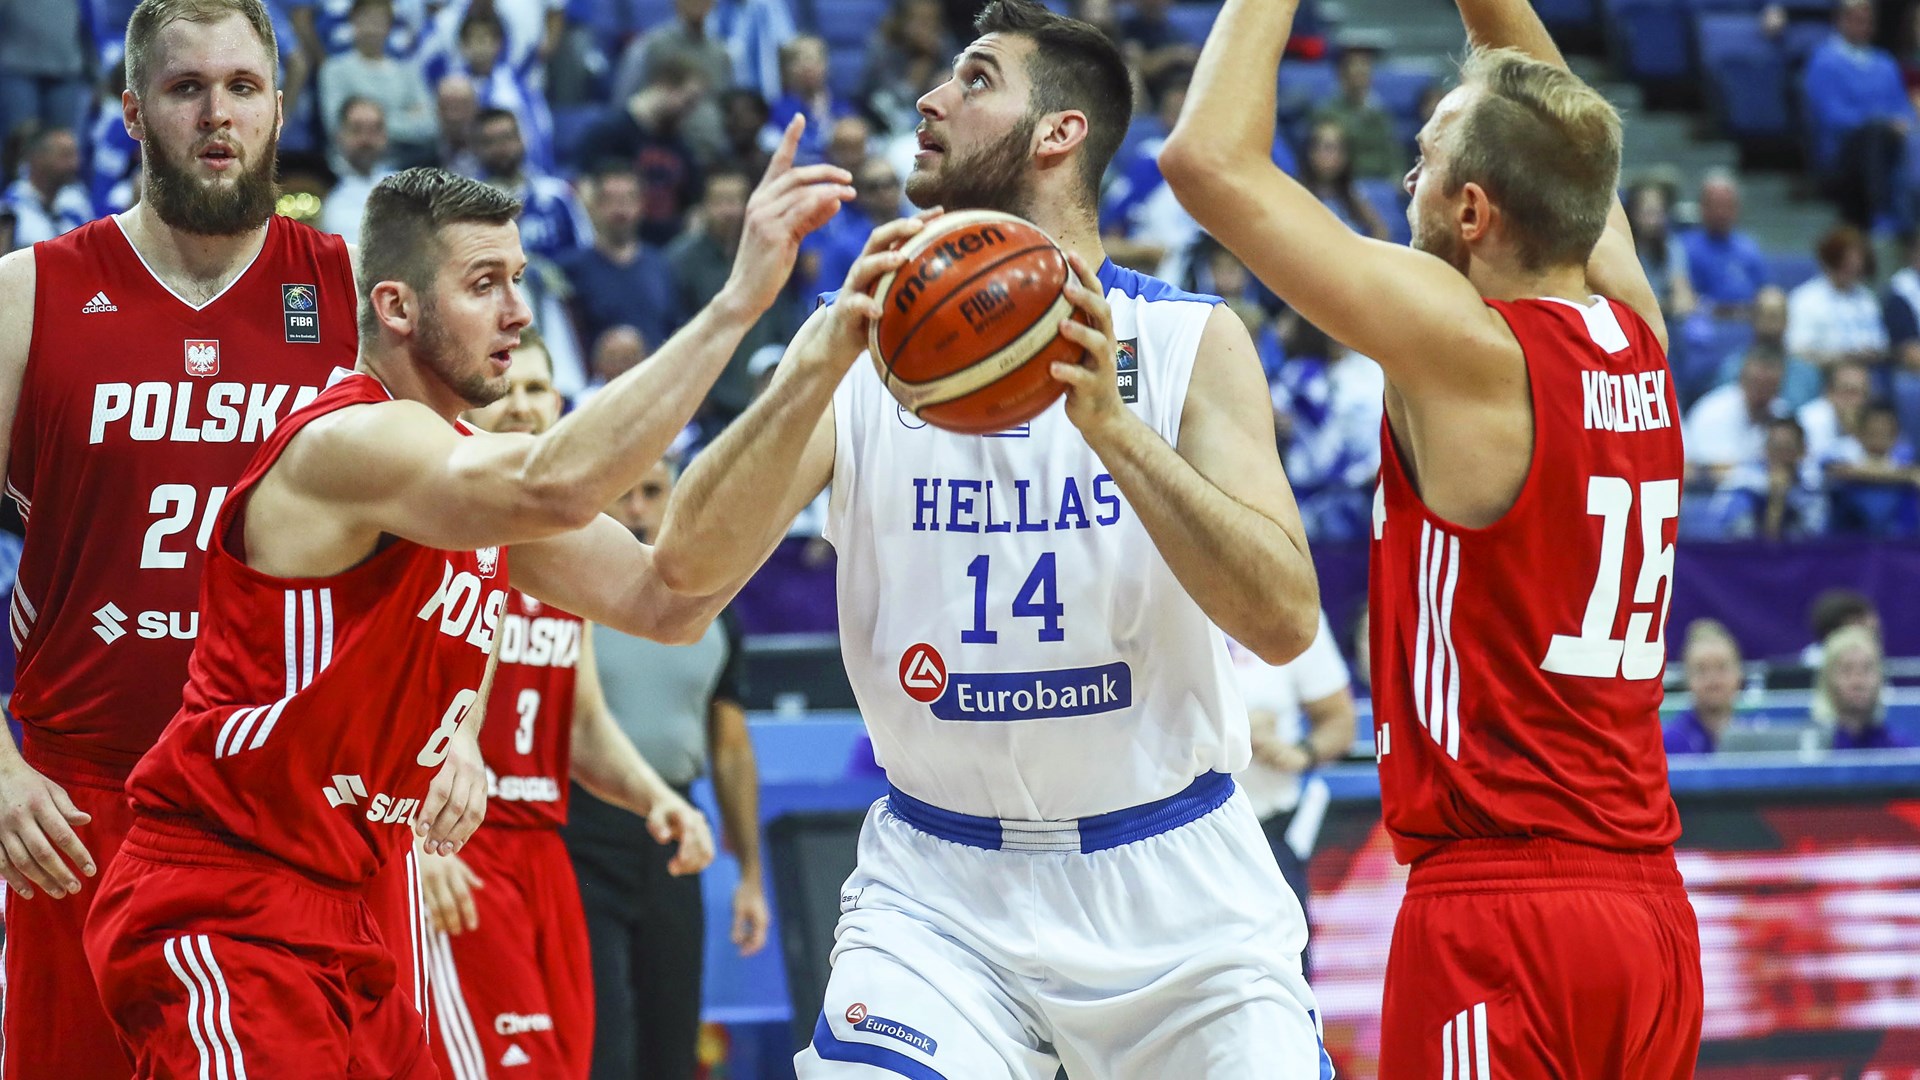 Στους “16” του Eurobasket η Ελλάδα – Νίκησε 95-77 την Πολωνία